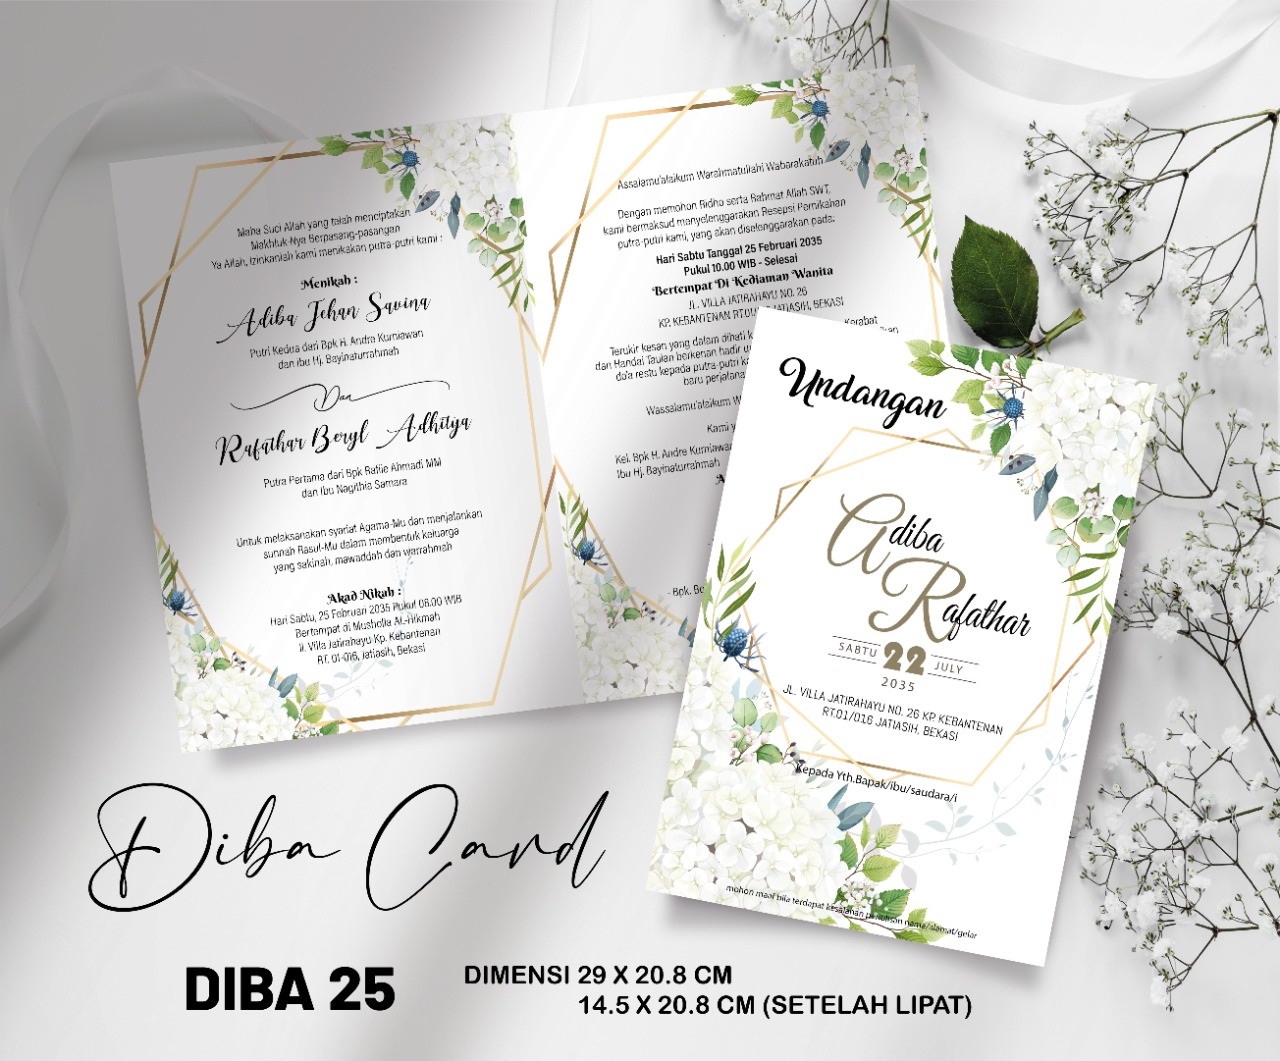 DIBA CARD 25 